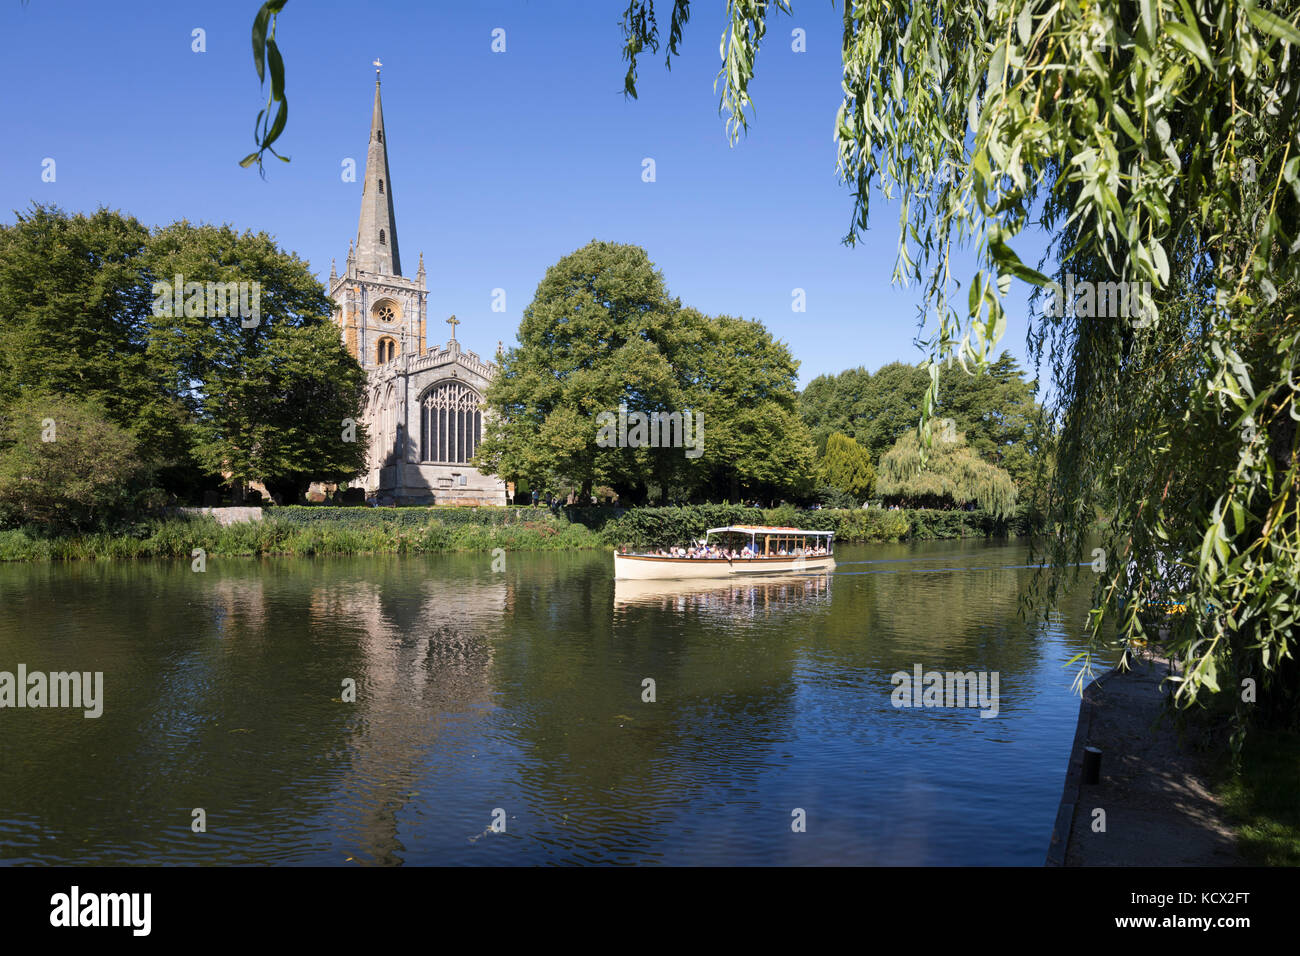 Chiesa della Santa Trinità (Shakespeare luogo di sepoltura) sul Fiume Avon con tour in barca, Stratford-upon-Avon, Warwickshire, Inghilterra, Regno Unito, Europa Foto Stock